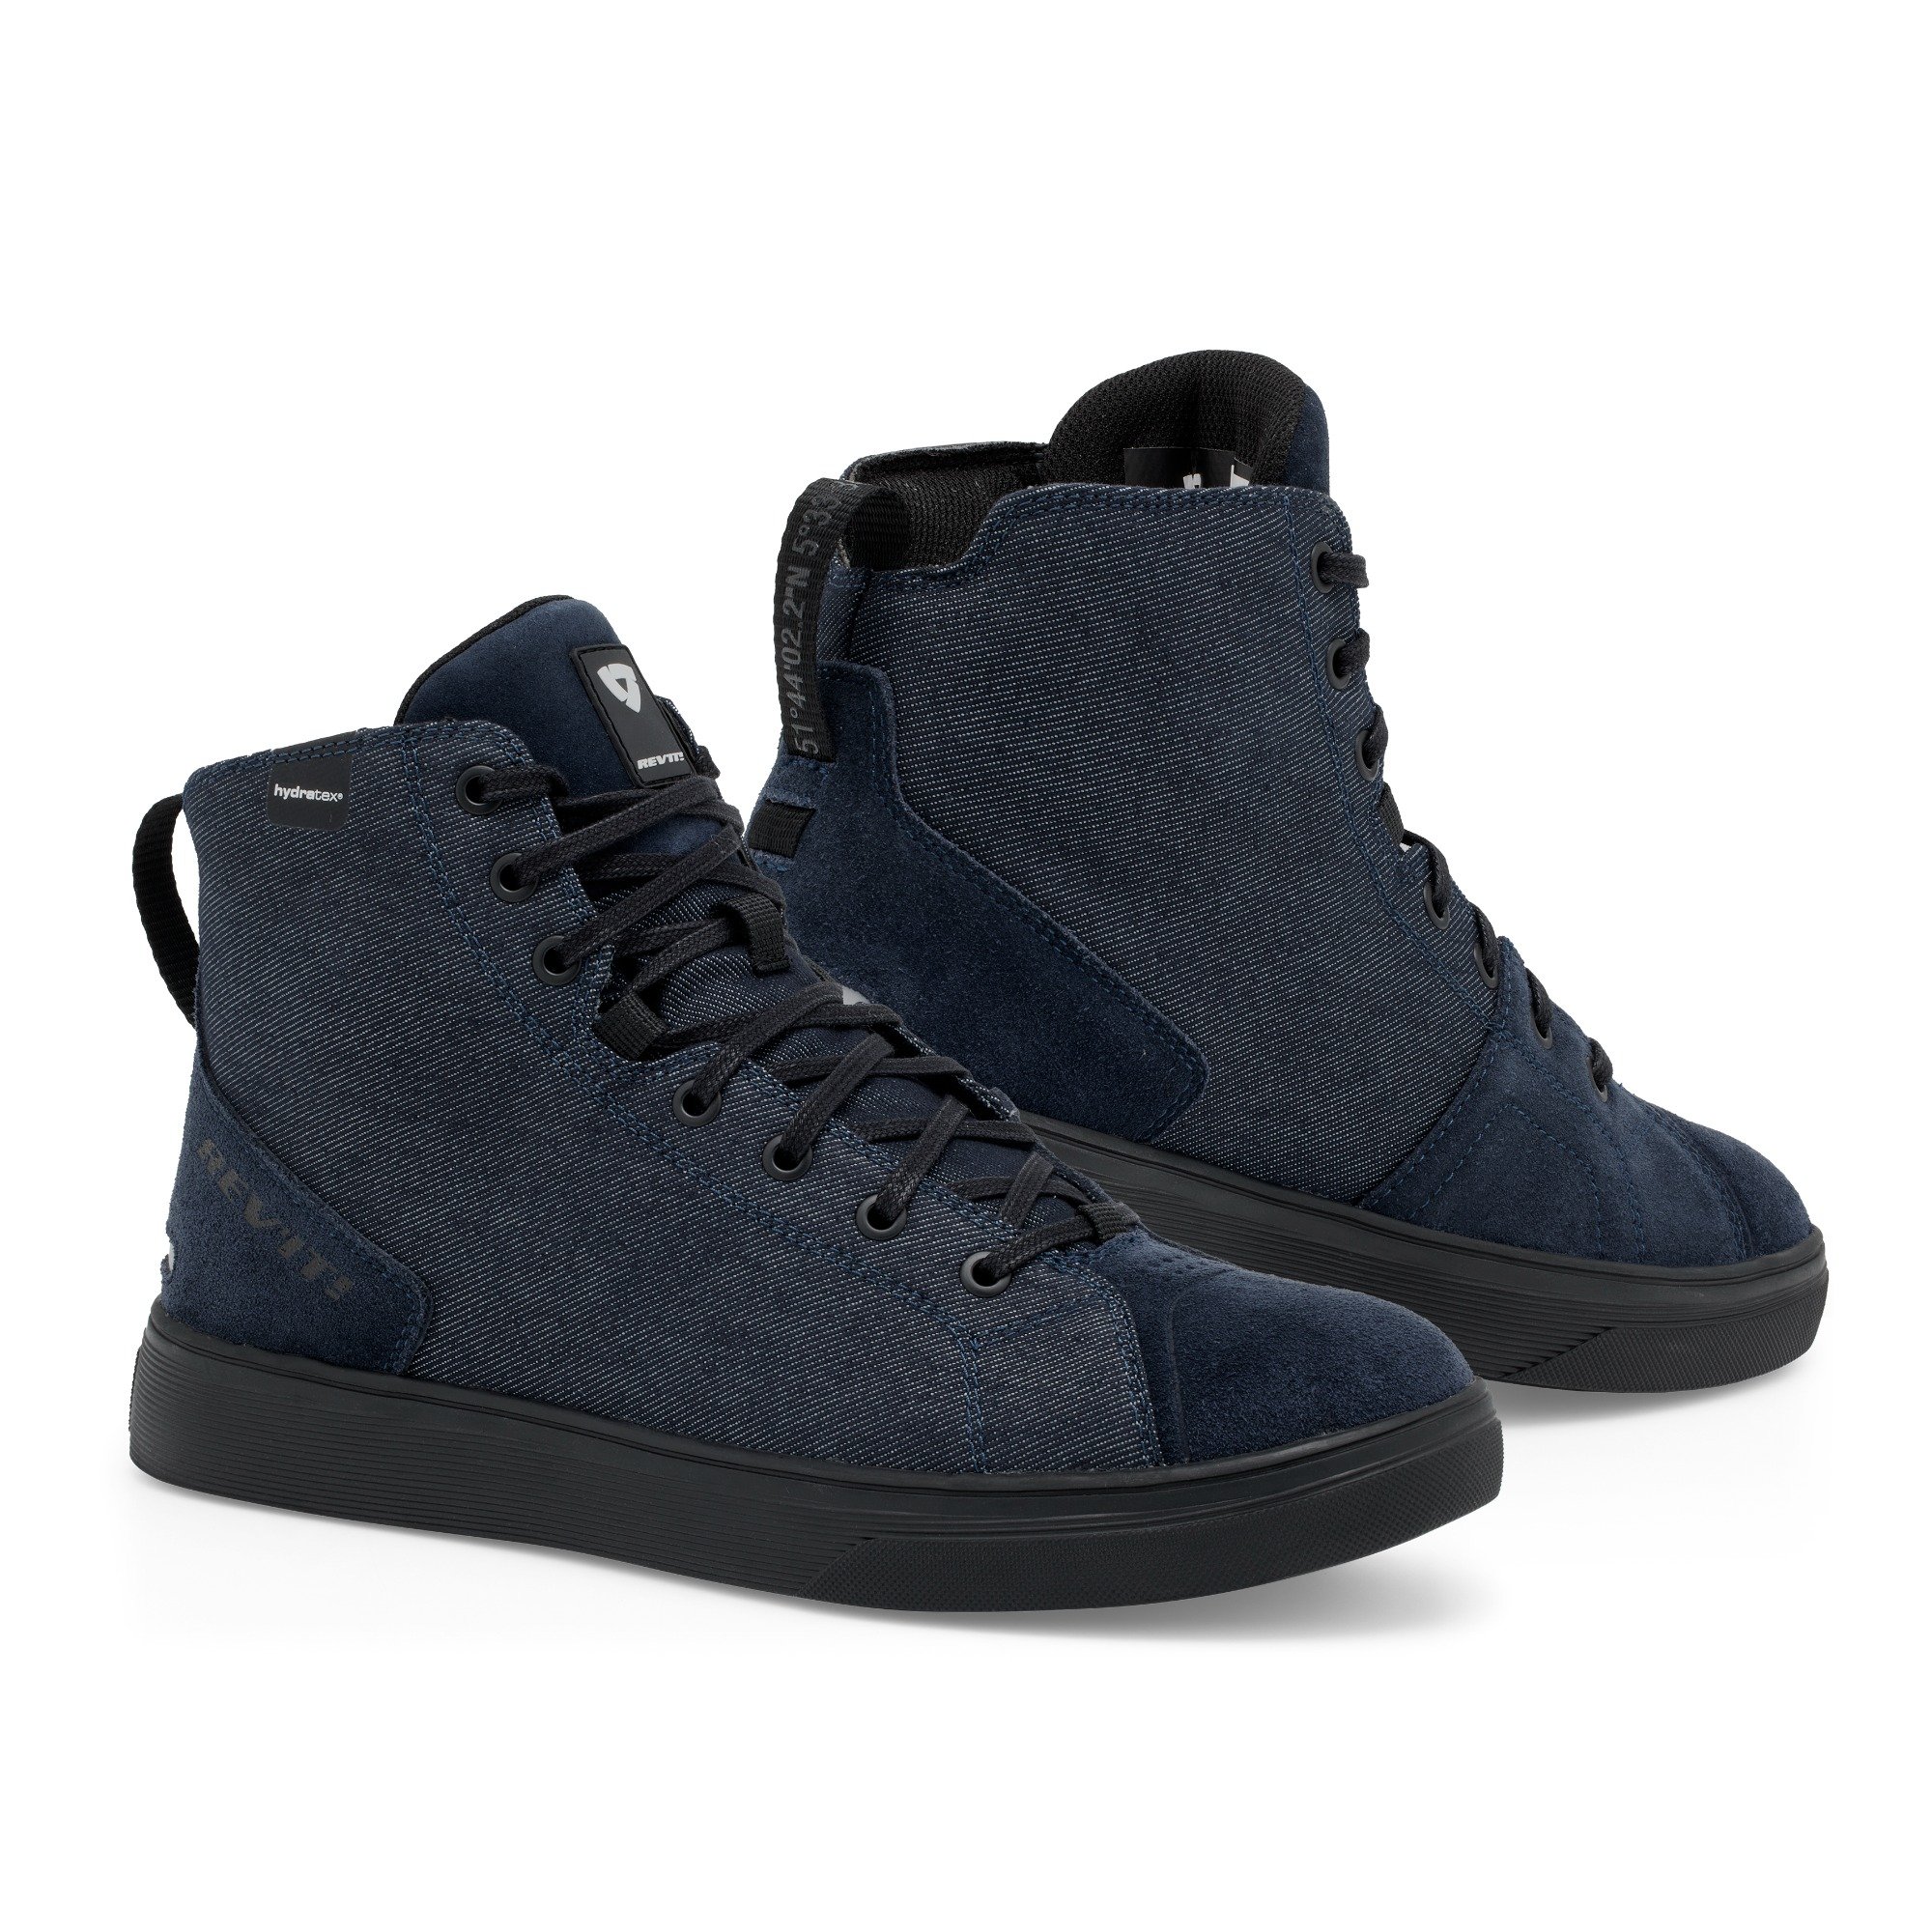 Image of EU REV'IT! Delta H2O Chaussures Foncé Bleu Noir Taille 39